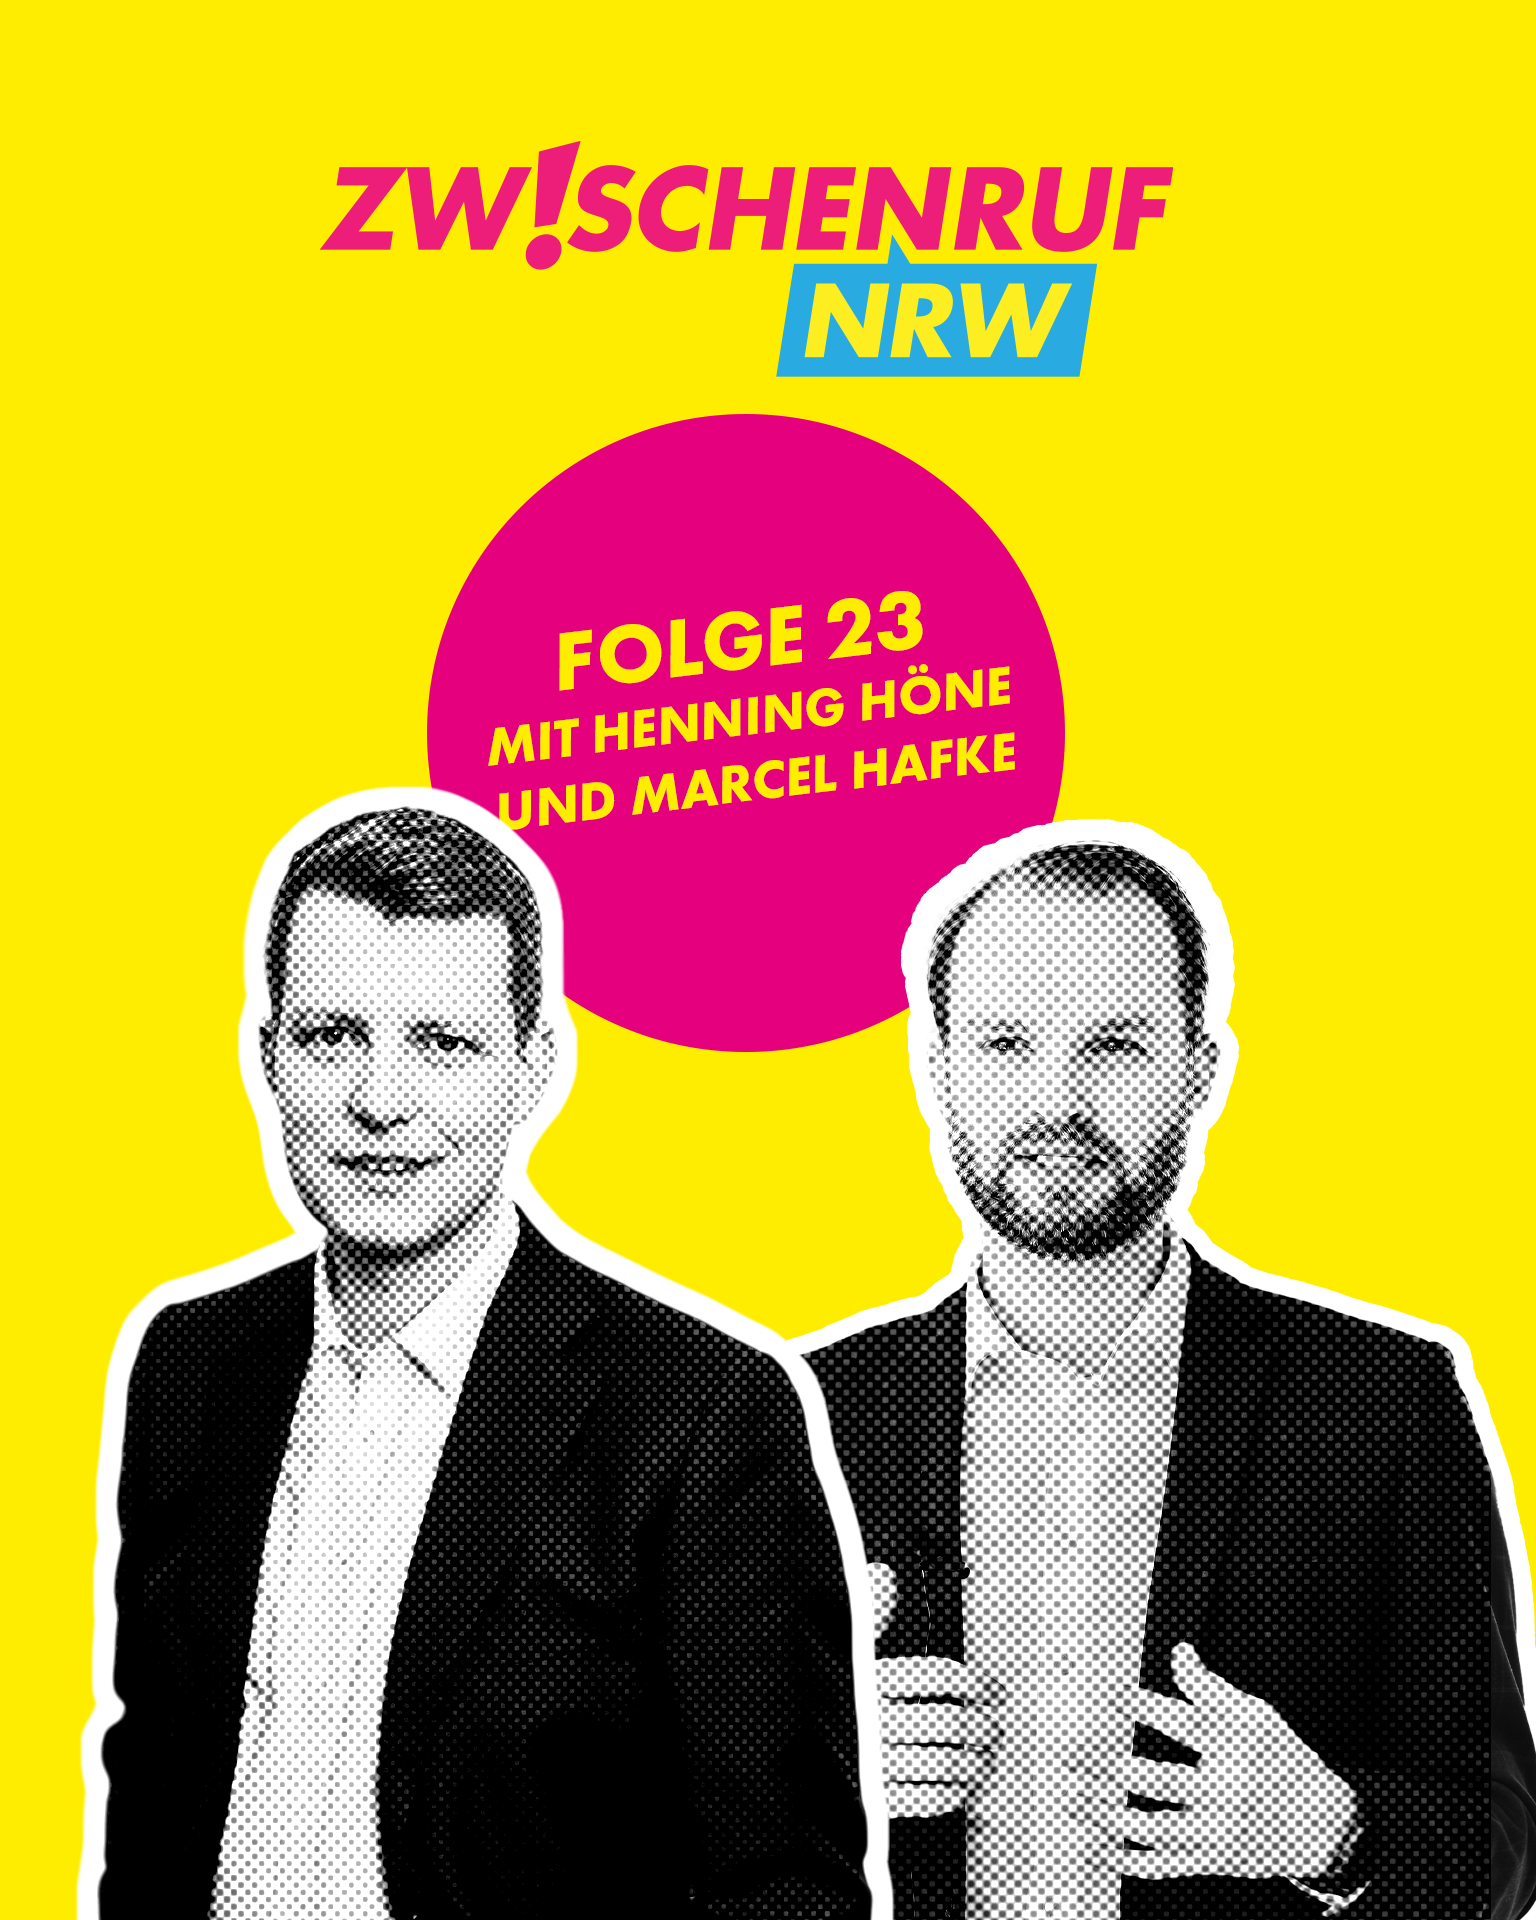 Read more about the article Folge 23 – OGS-Rechtsanspruch 2026, Wirtschaftspolitik in NRW und das 12-Punkte-Papier der FDP mit Henning Höne